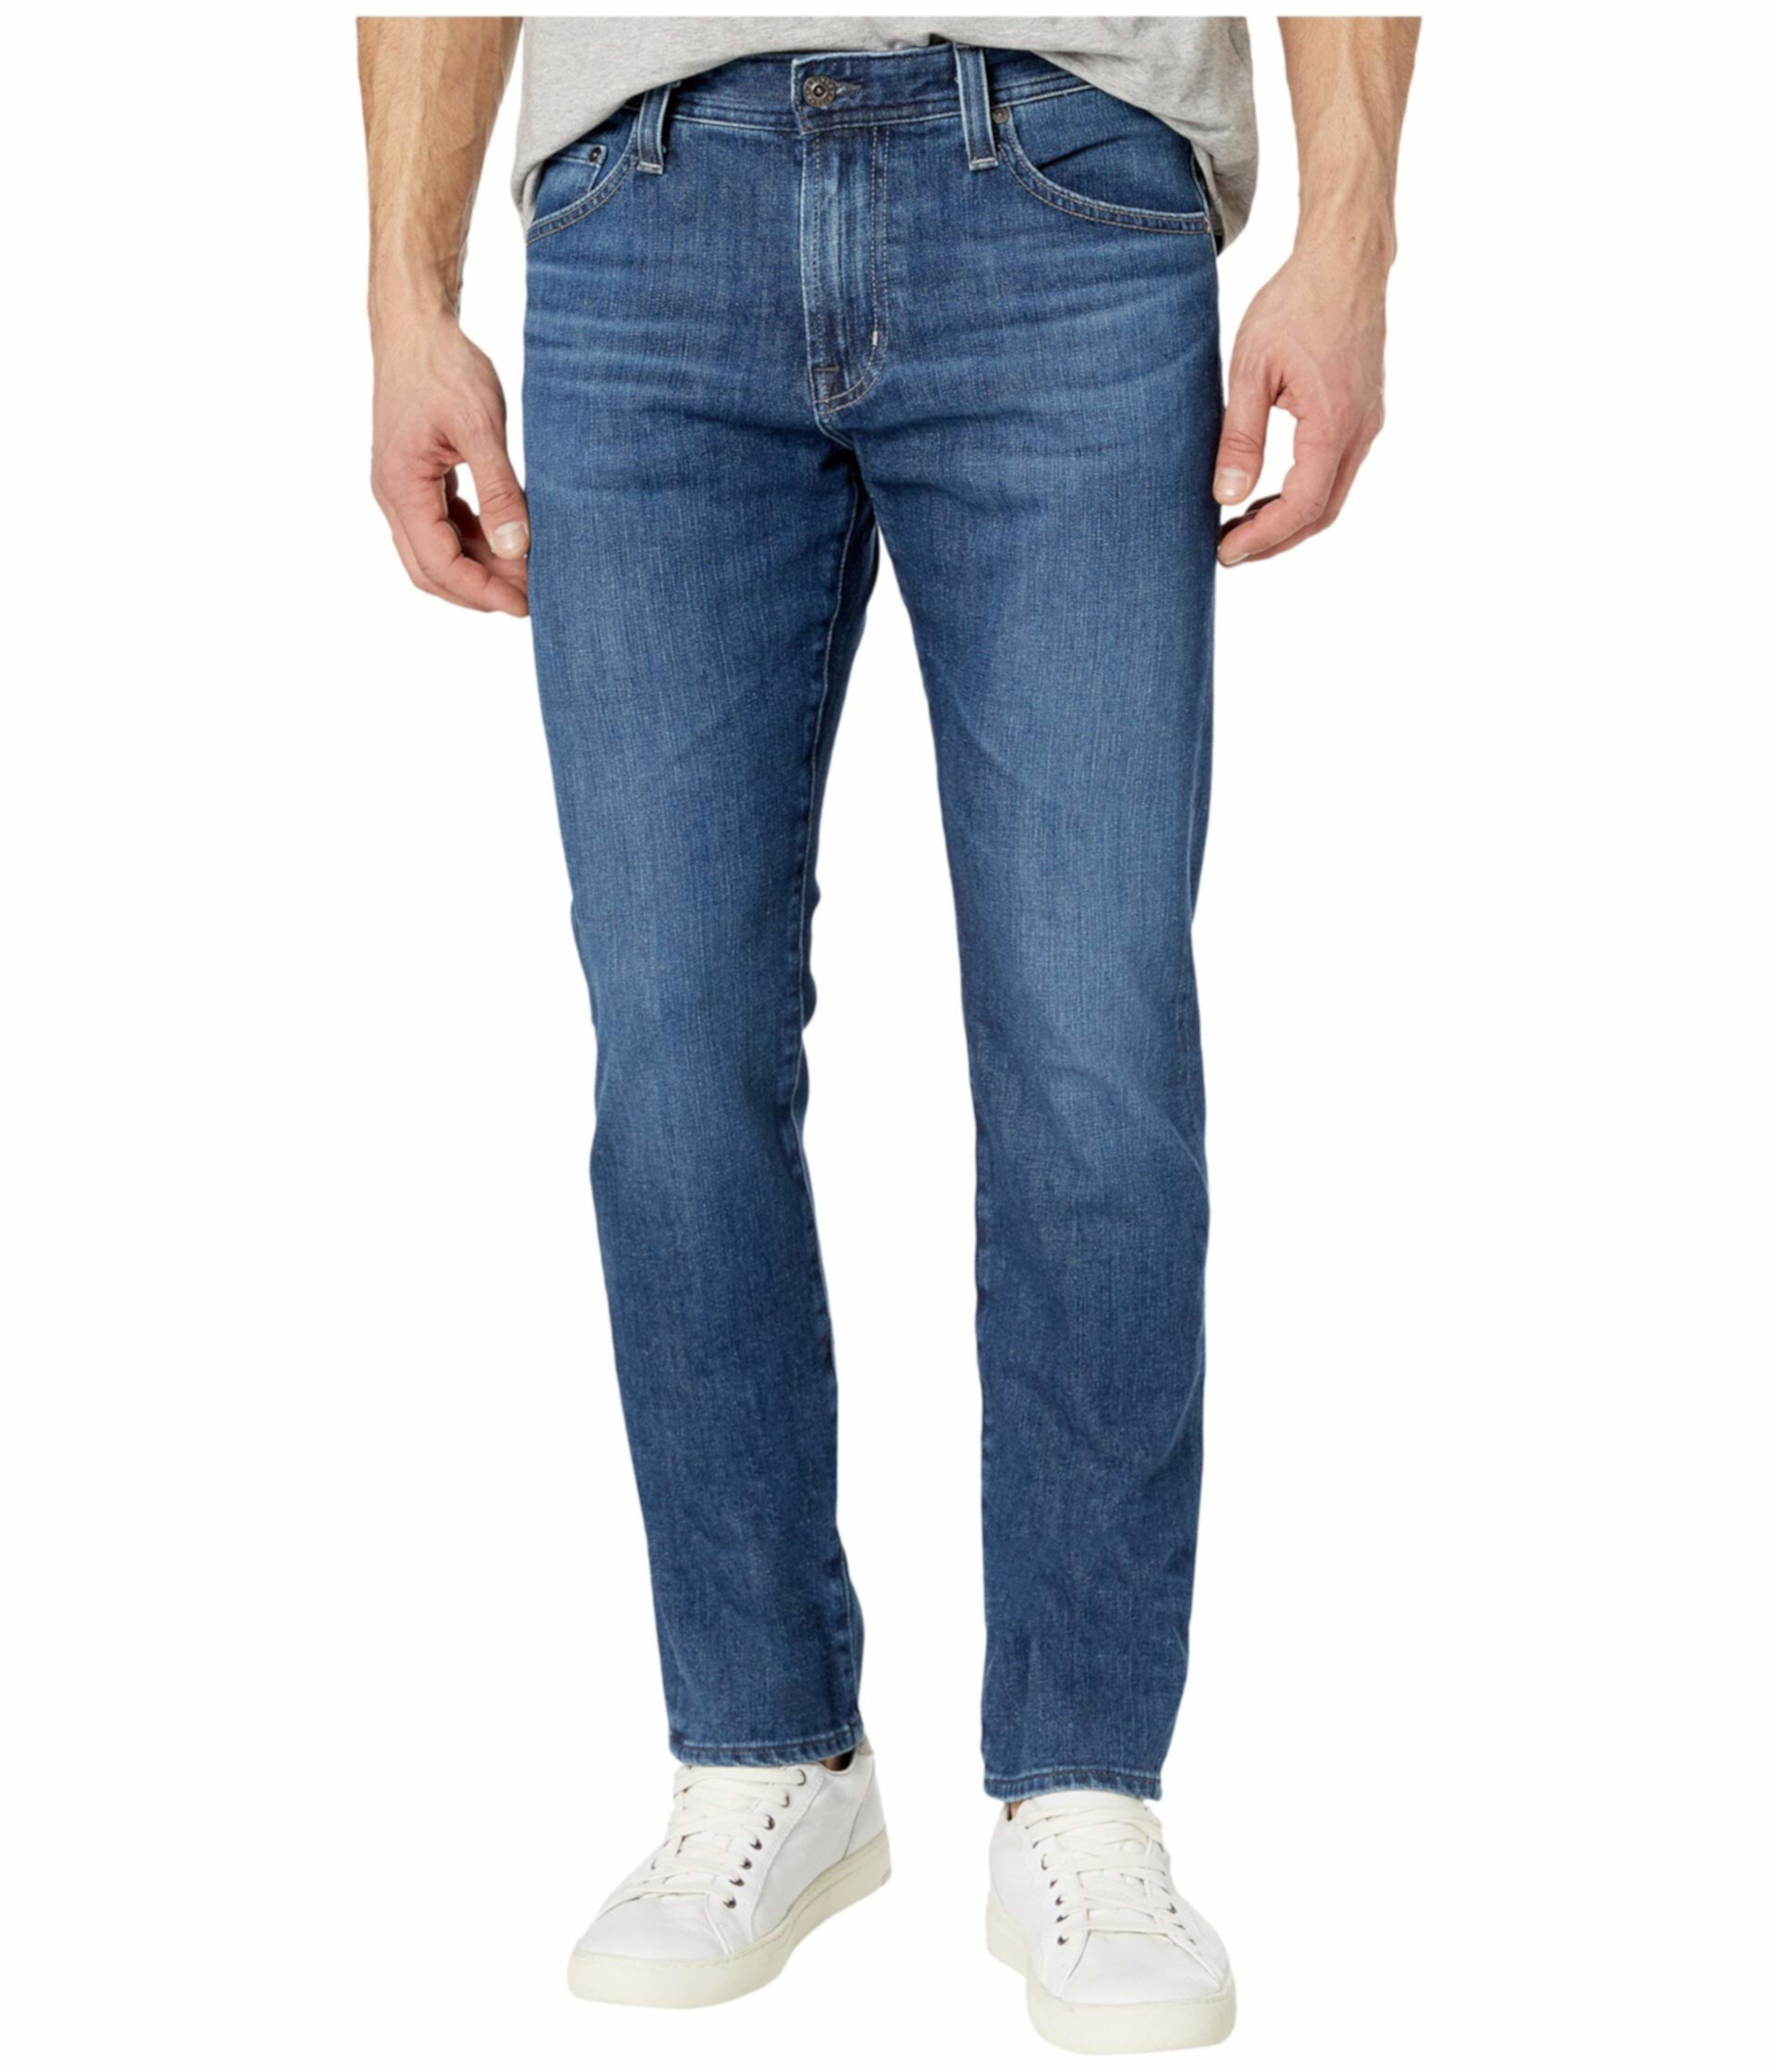 Узкие прямые джинсы Everett в Вестбурне AG Adriano Goldschmied